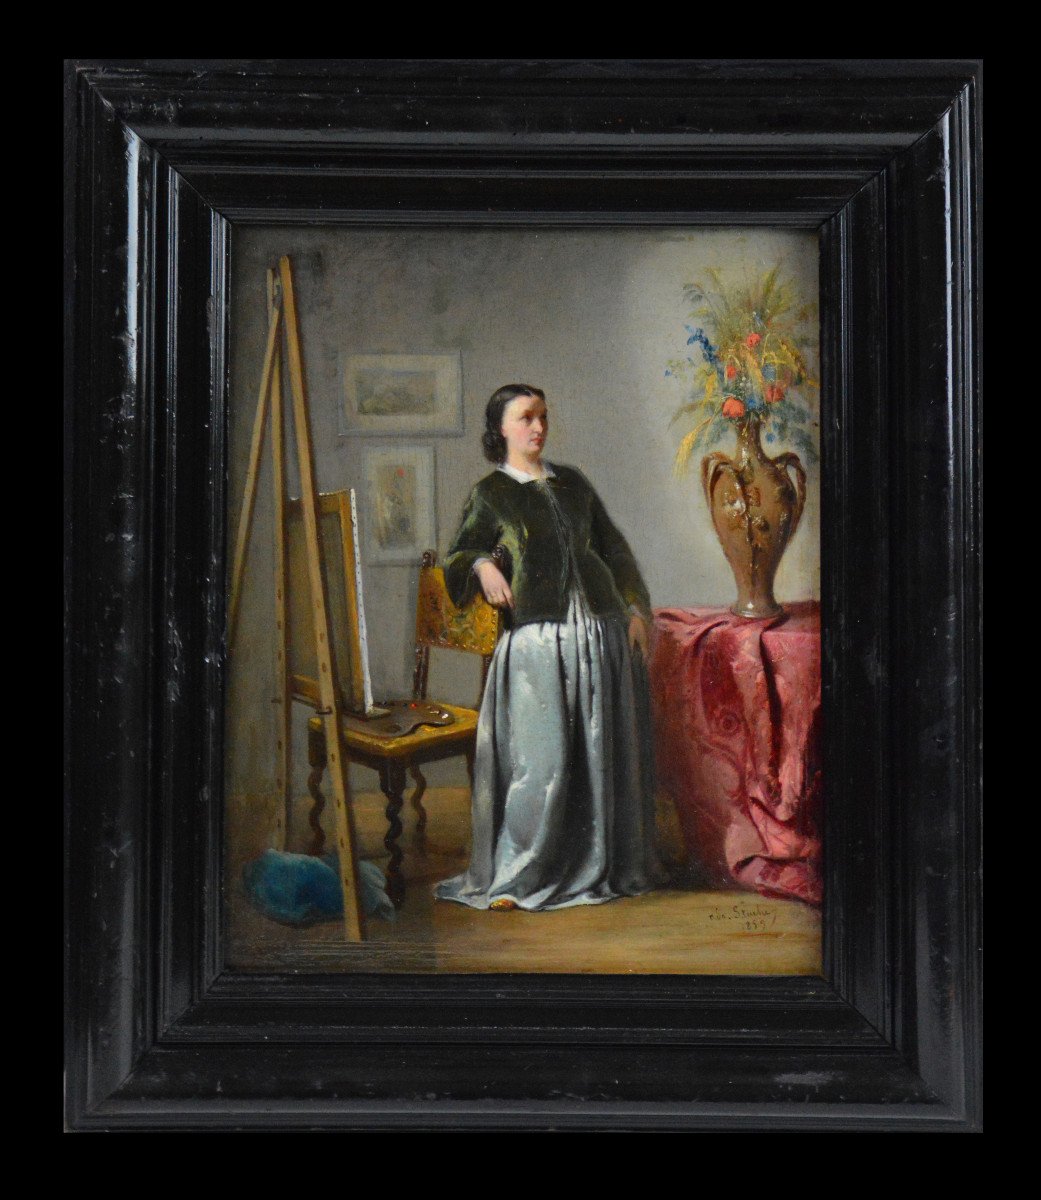 Adolphe Stache 1823-1862. École Belge. "Femme peintre dans son atelier."